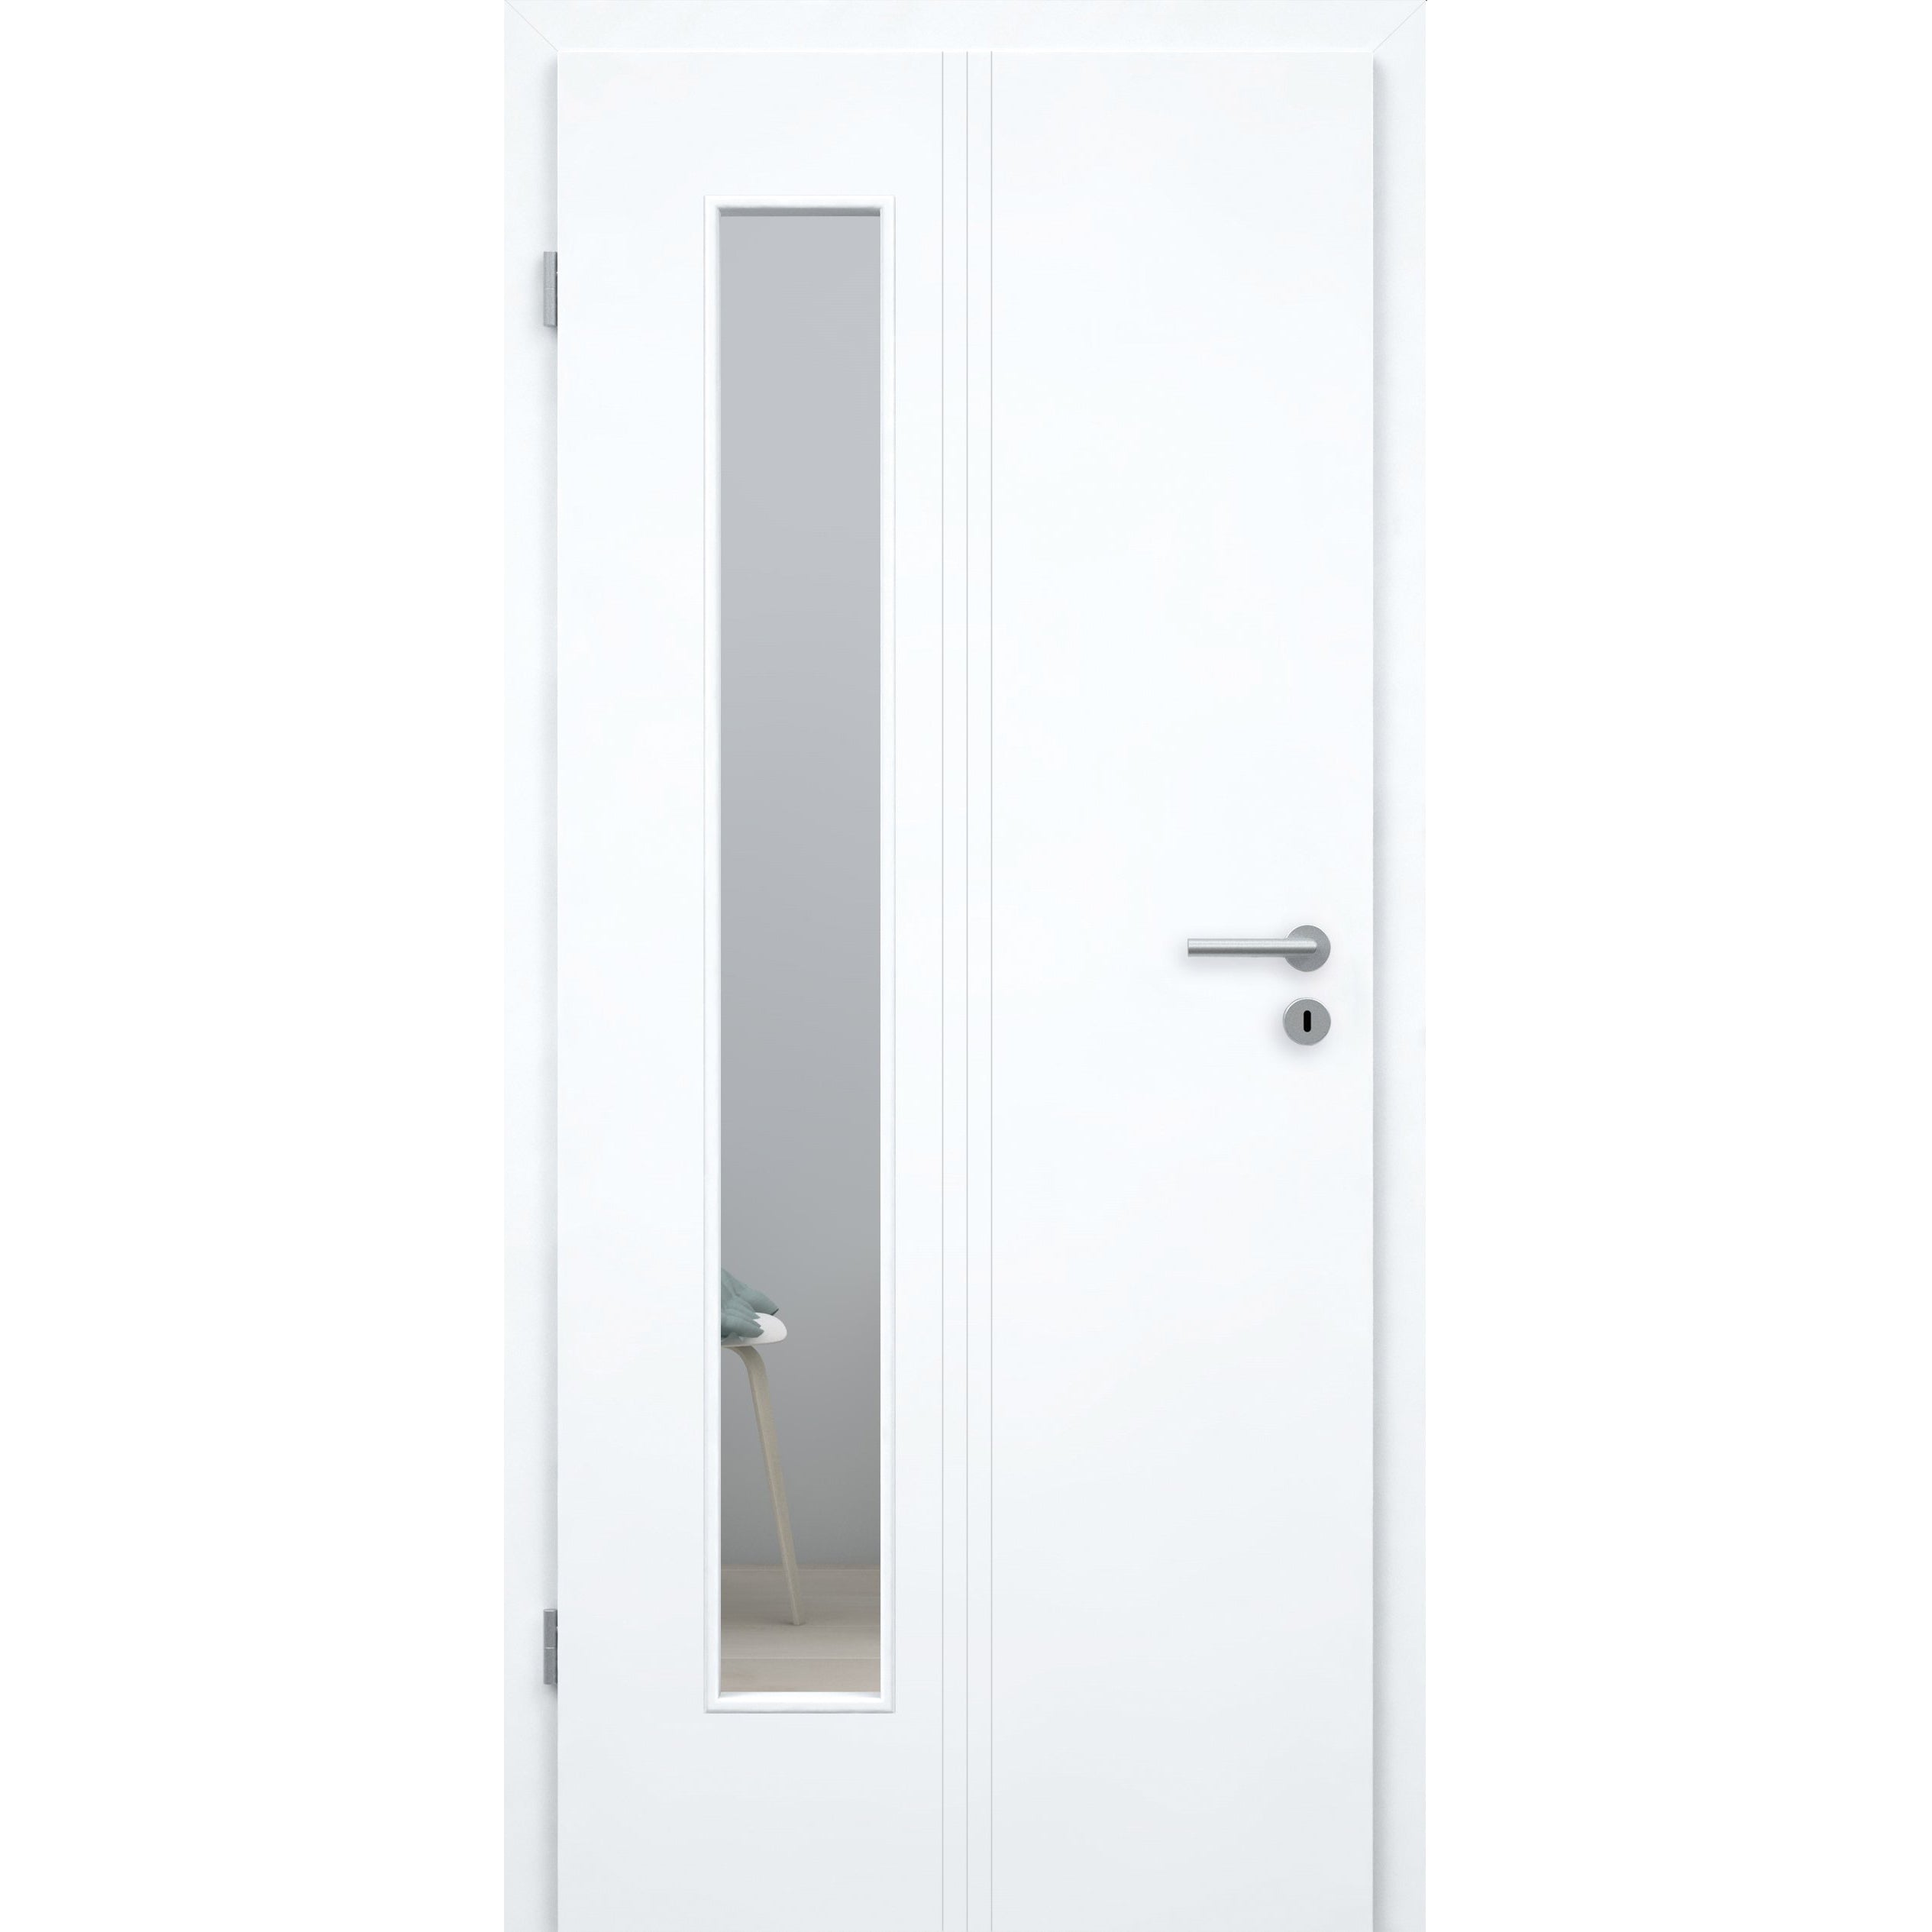 Zimmertür mit Lichtausschnitt brillant-weiß 3 Rillen aufrecht Designkante - Modell Designtür VM33LAB